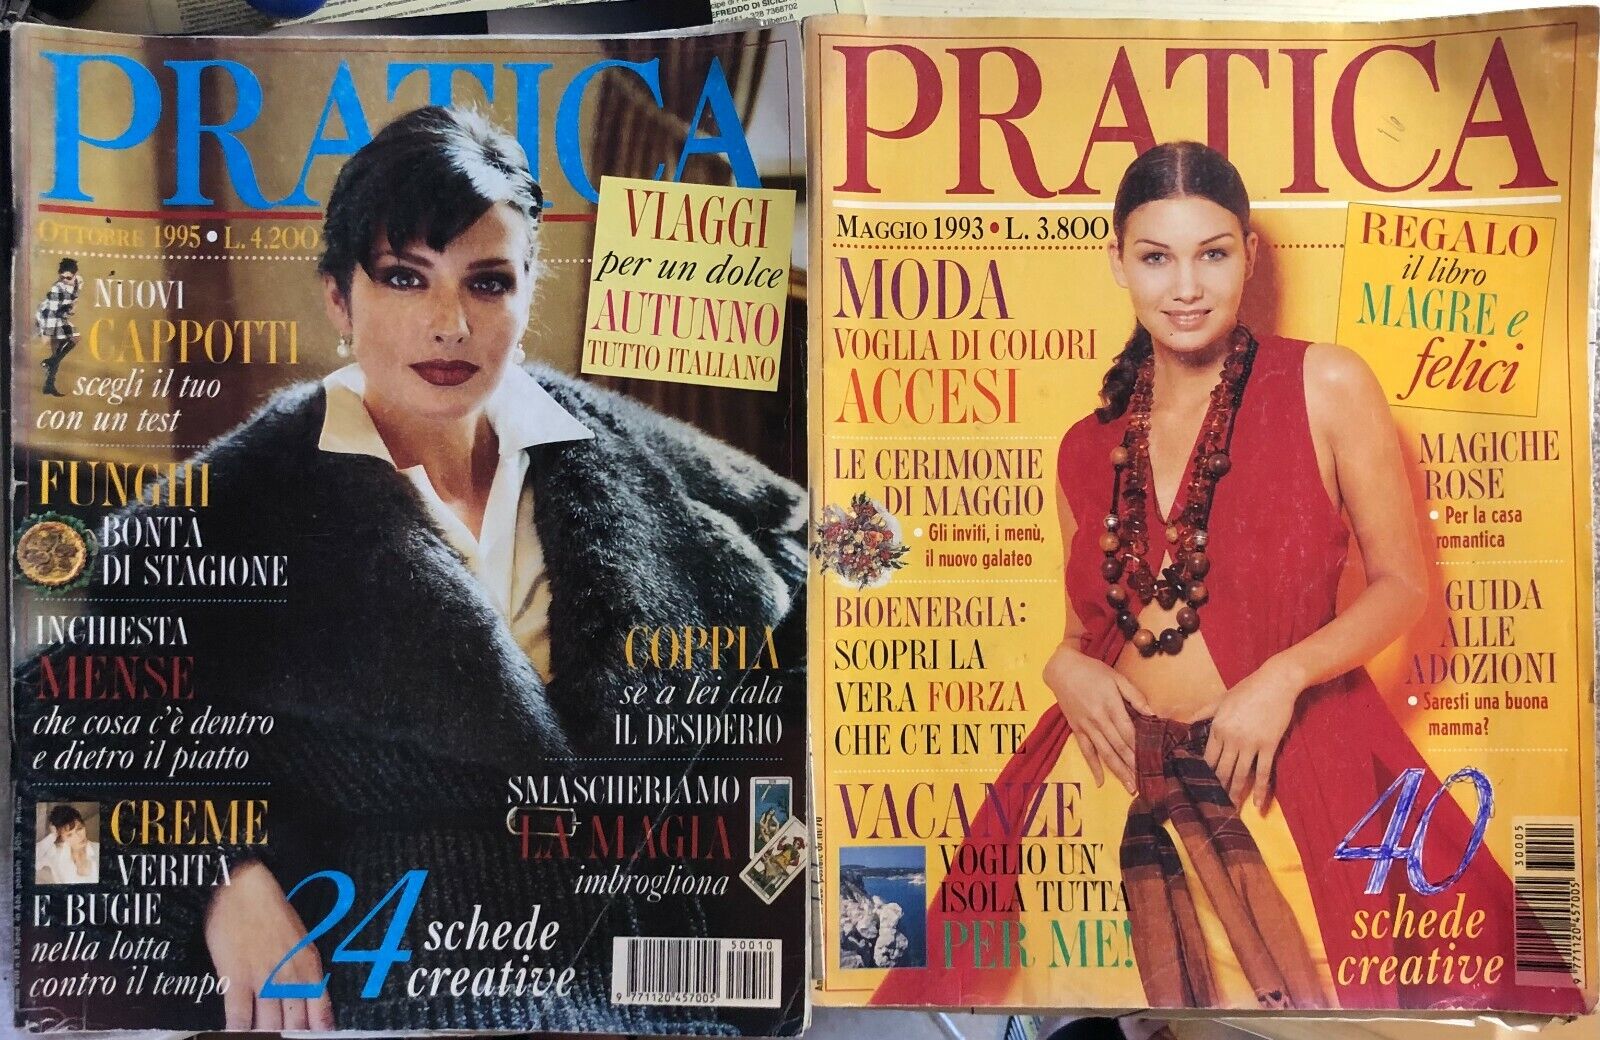 Pratica maggio 1993 - ottobre 1995 di Aa.vv.,  1993,  Pratica